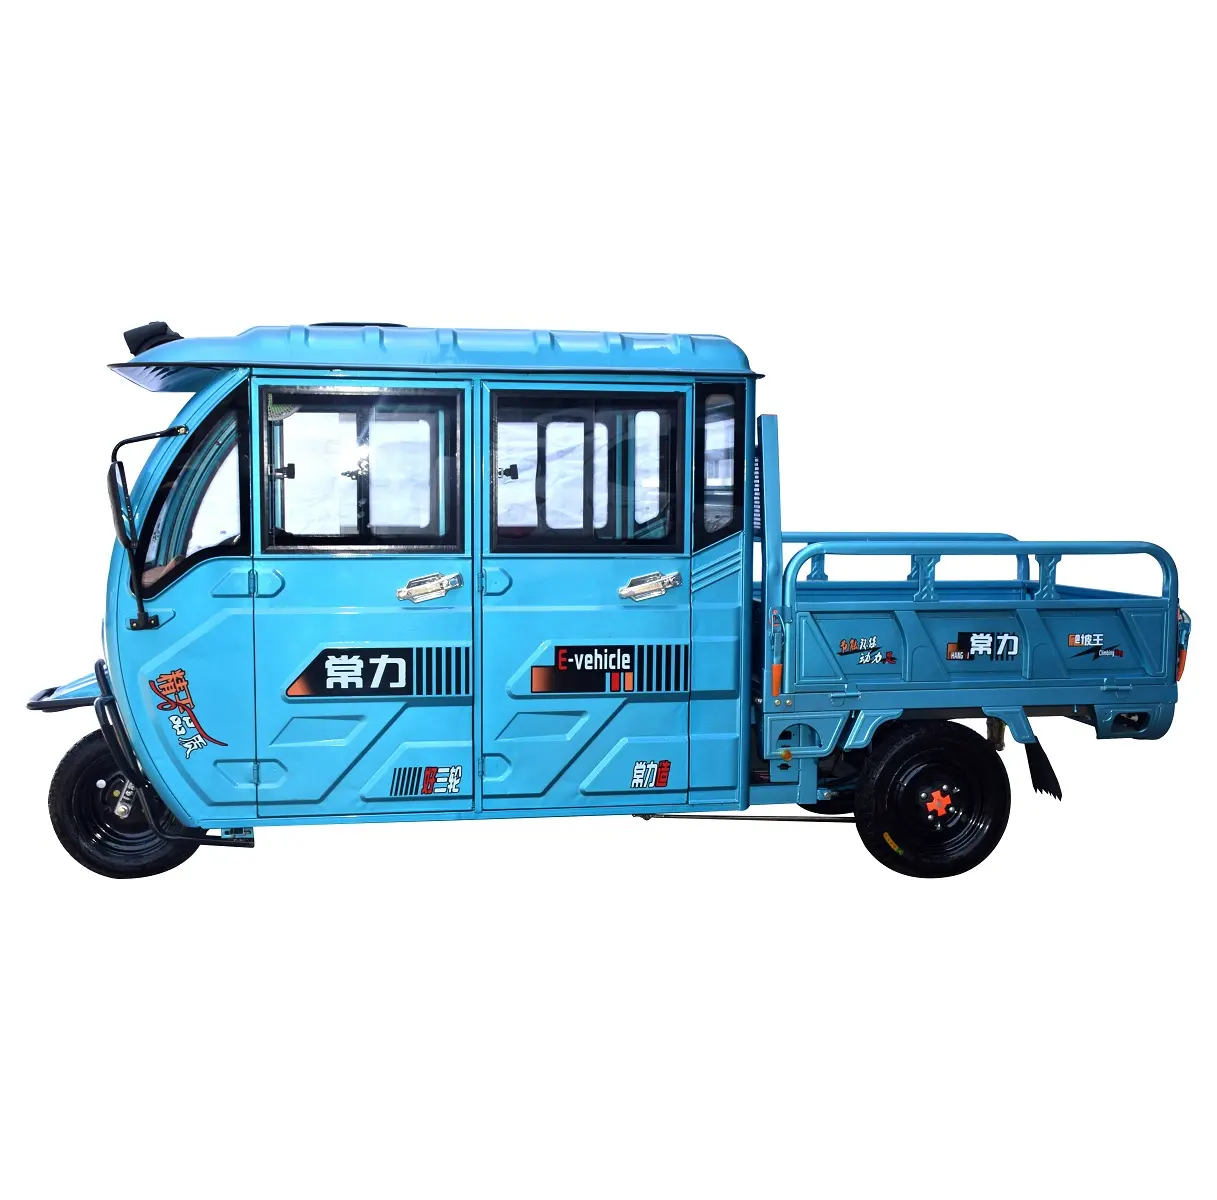 Ad alta potenza motore triciclo per il trasporto merci Chiuso del carico Elettrico triciclo con la batteria per la fabbrica/Agricoltore made in China